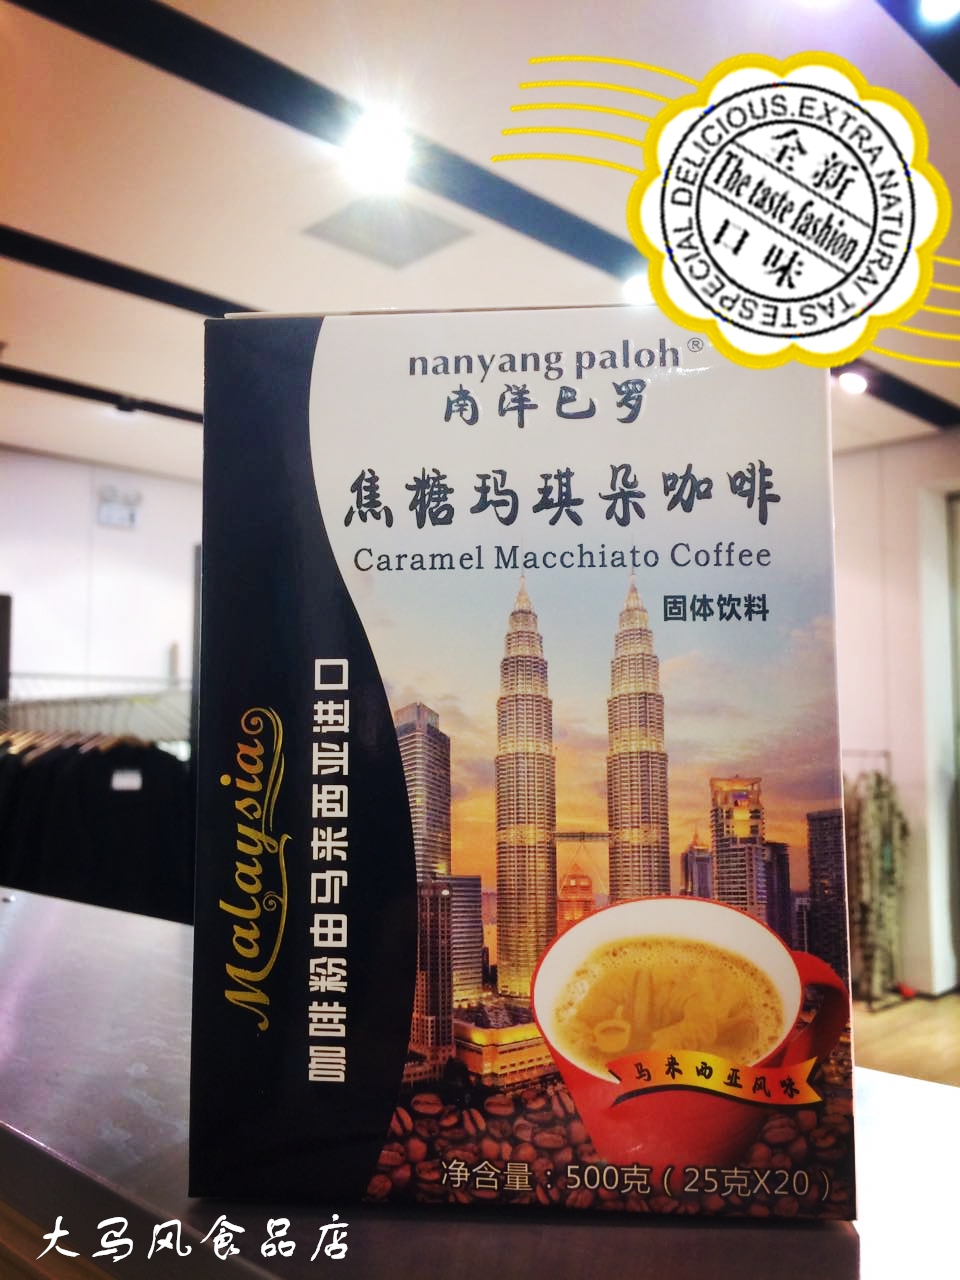 大马风专卖 马来西亚进口南洋巴罗白咖啡500g 焦糖玛奇朵包邮促销